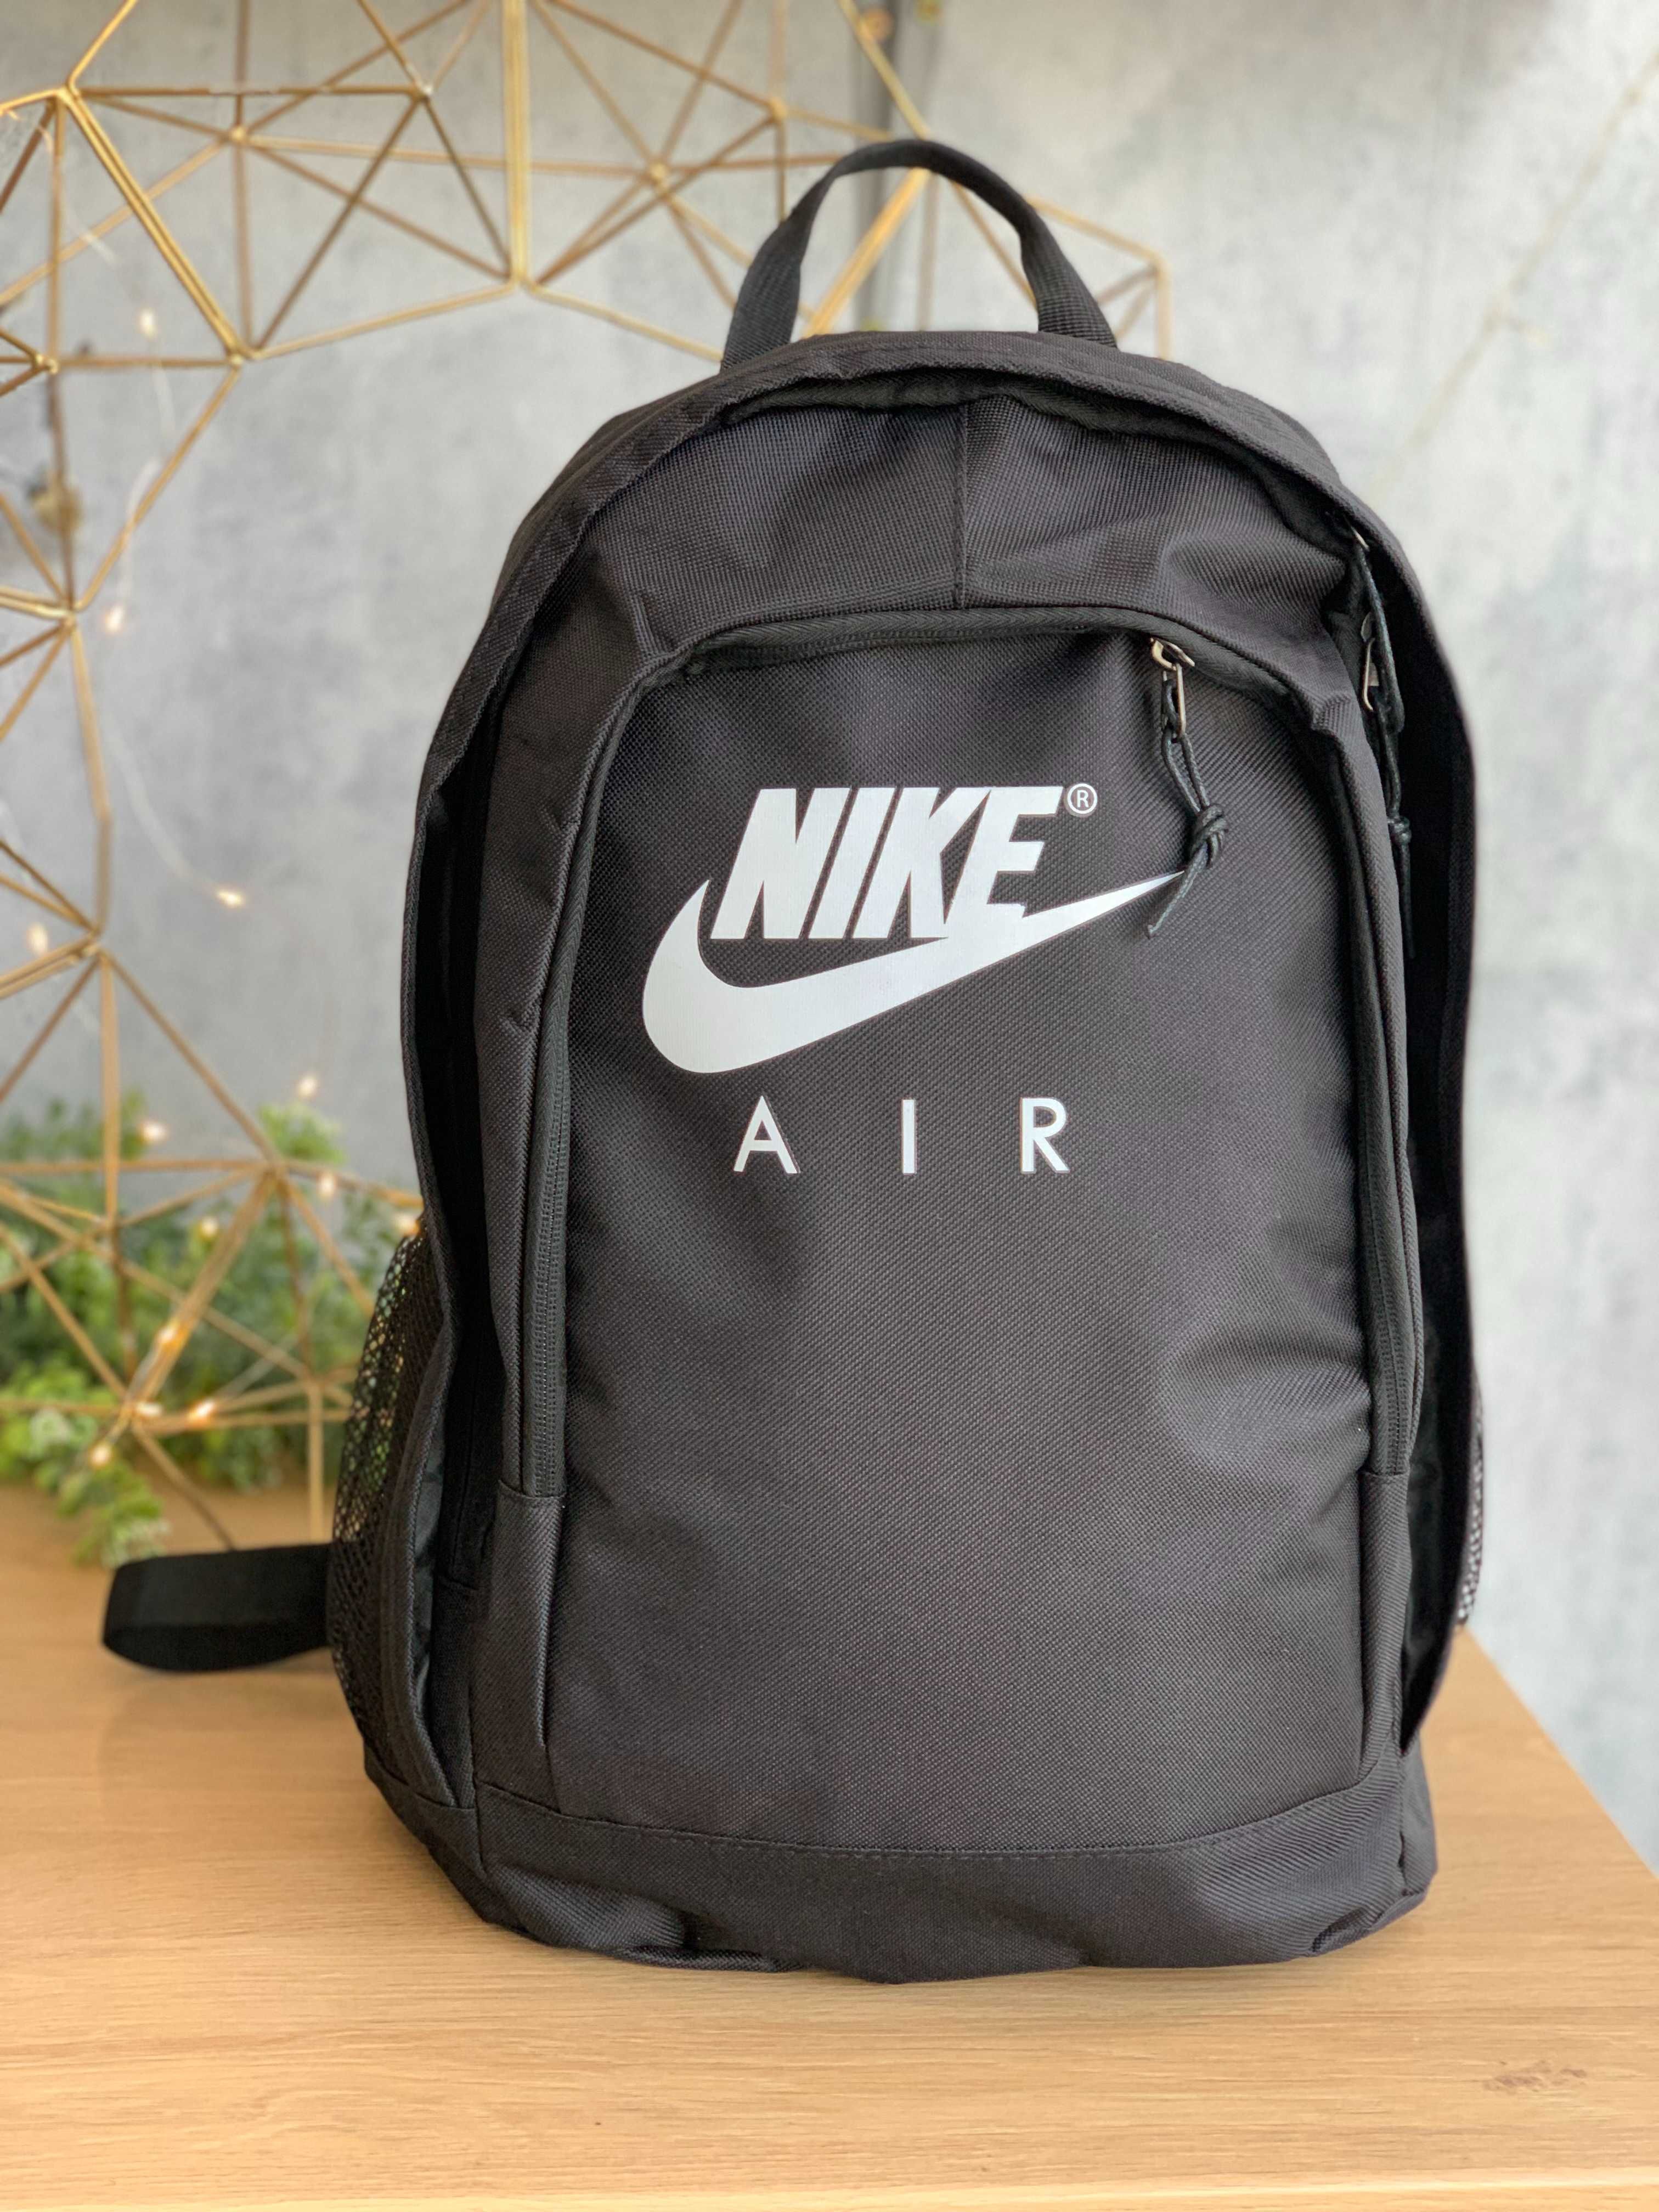 Рюкзак Nike AIR/Спортивный рюкзак/Сумка/Городской Рюкзак